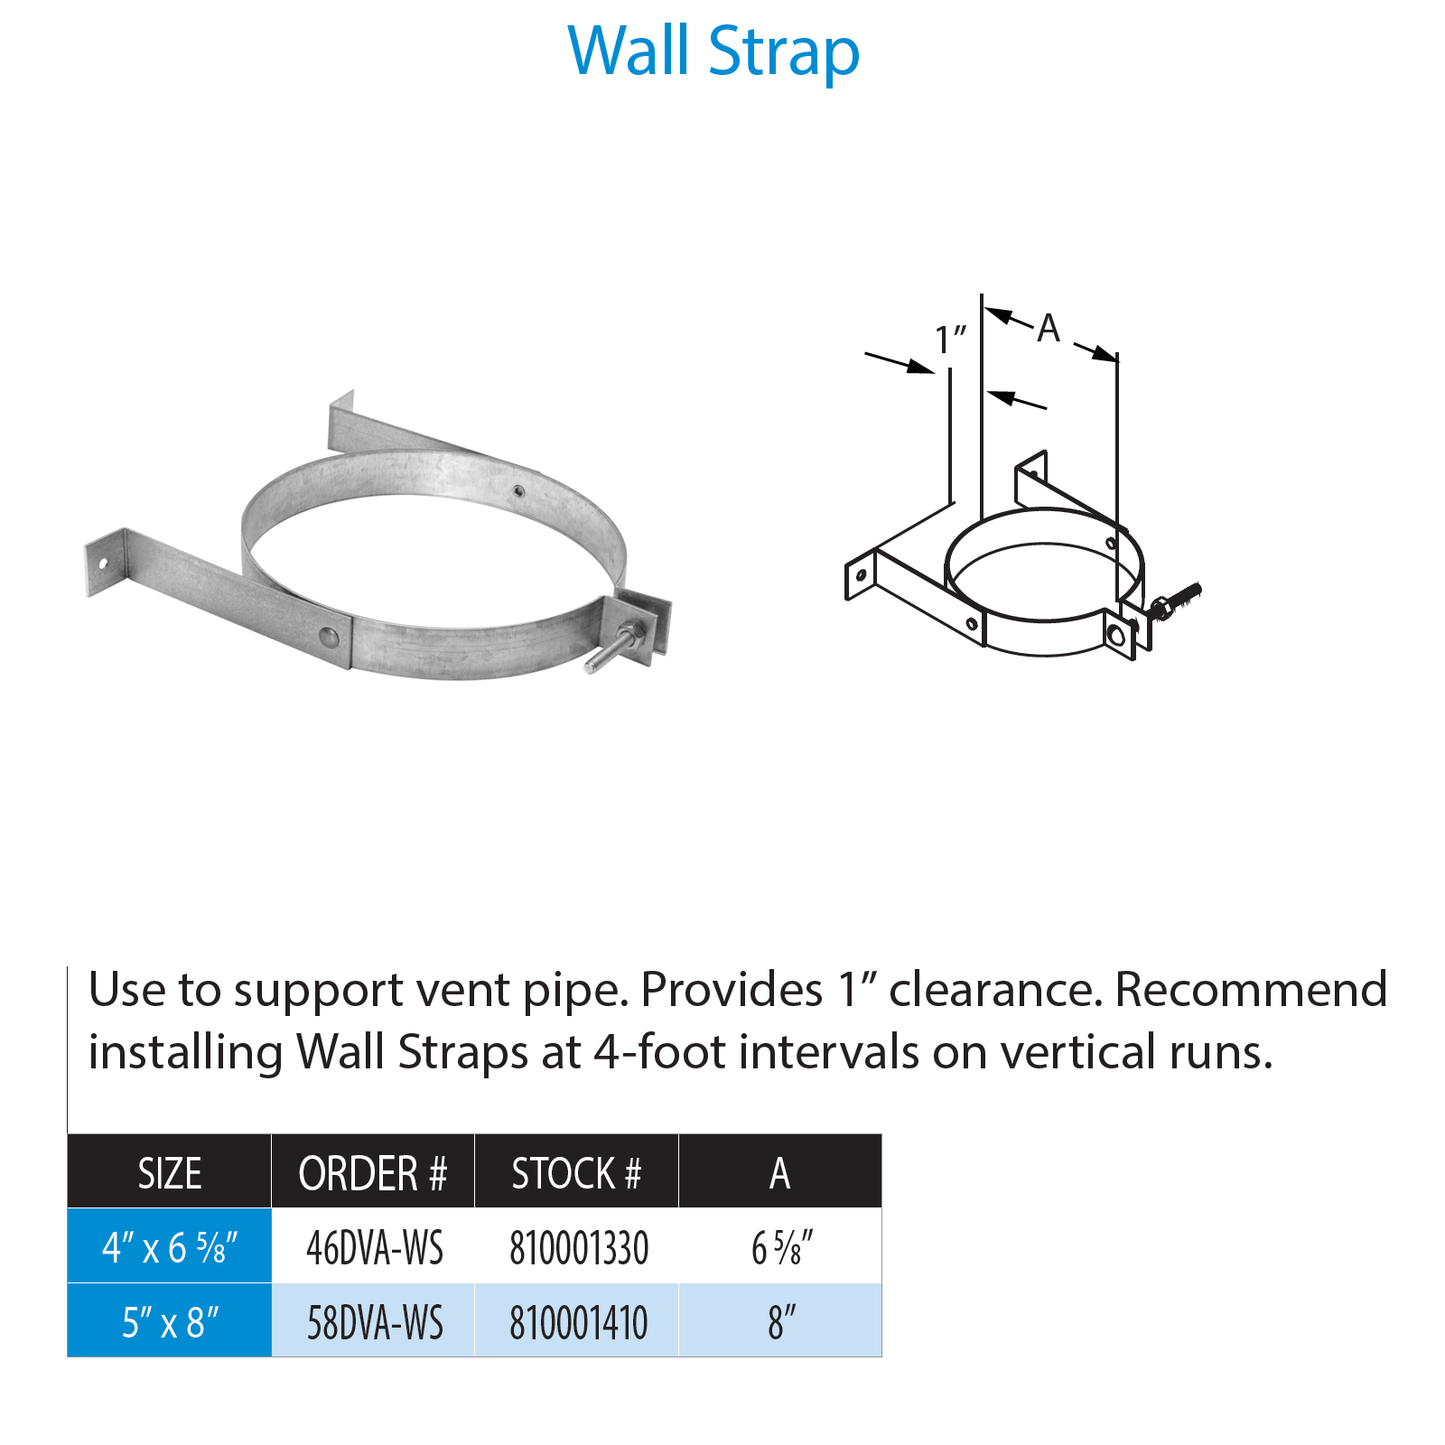 DuraVent DirectVent Pro Wall Strap | 58DVA-WS